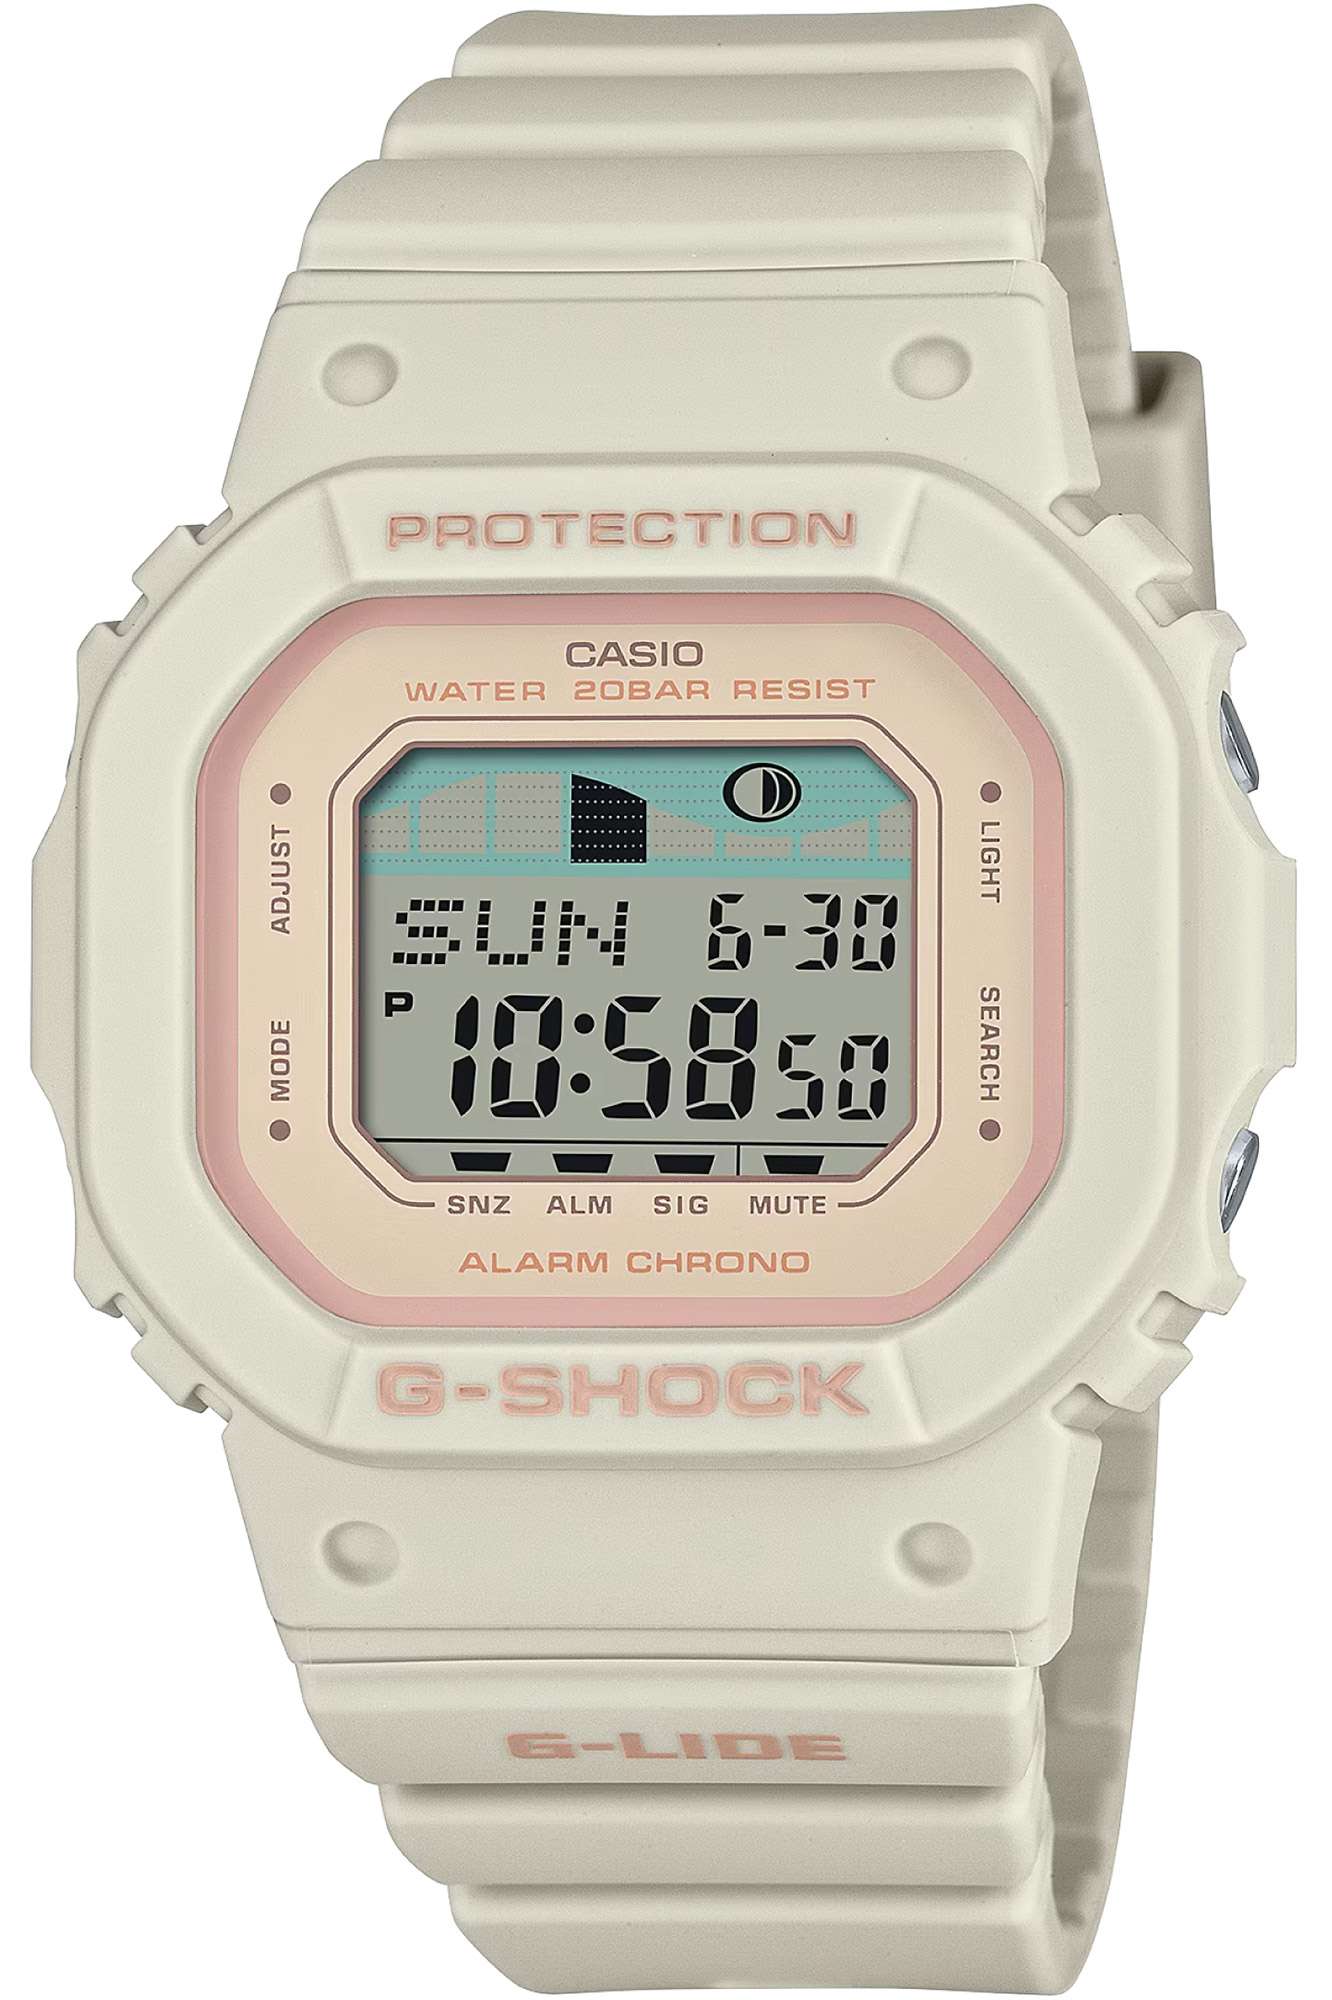 Uhr CASIO G-Shock glx-s5600-7er